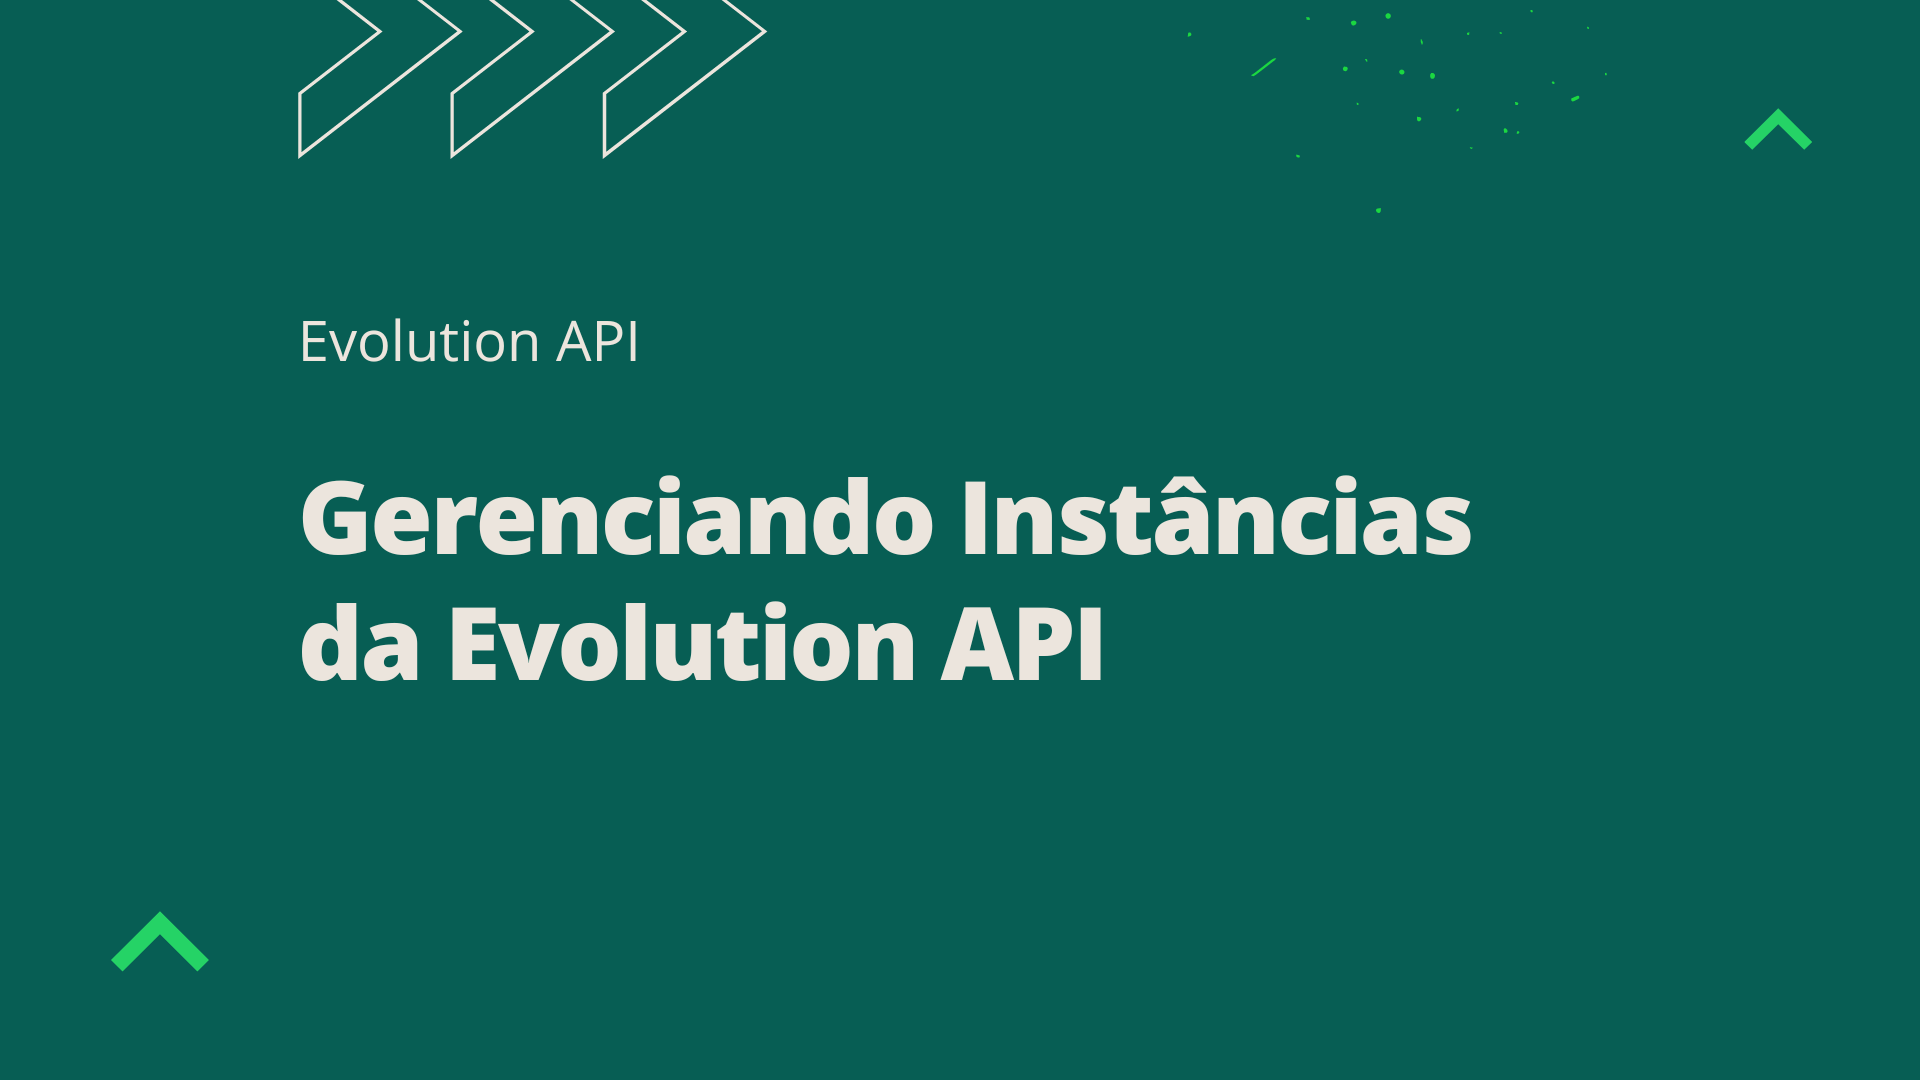 Gerenciando Instâncias da Evolution API